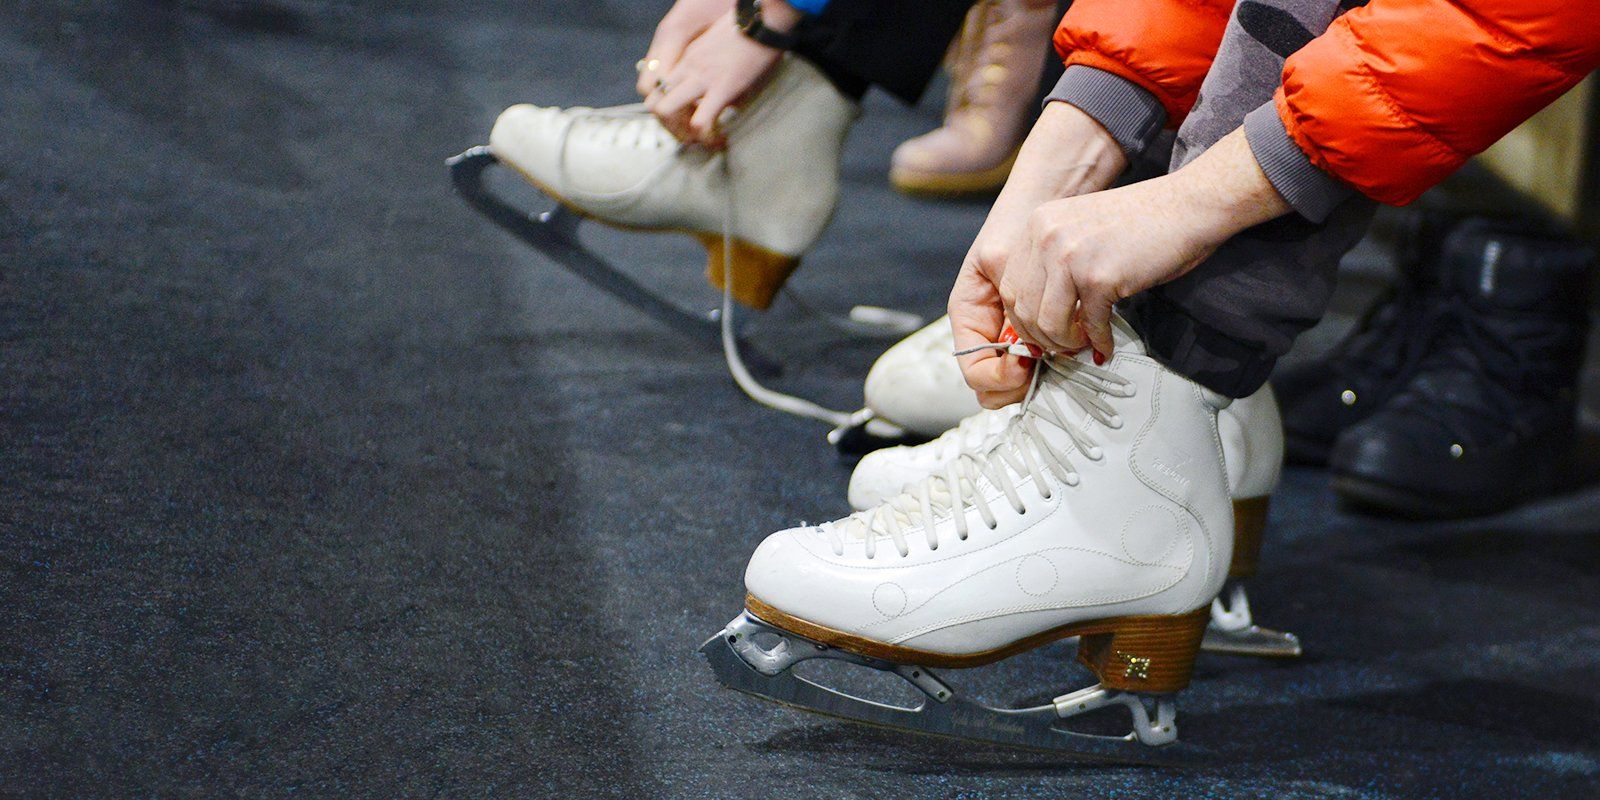 Танцы на льду: в каких парках открыты школы фигурного катания